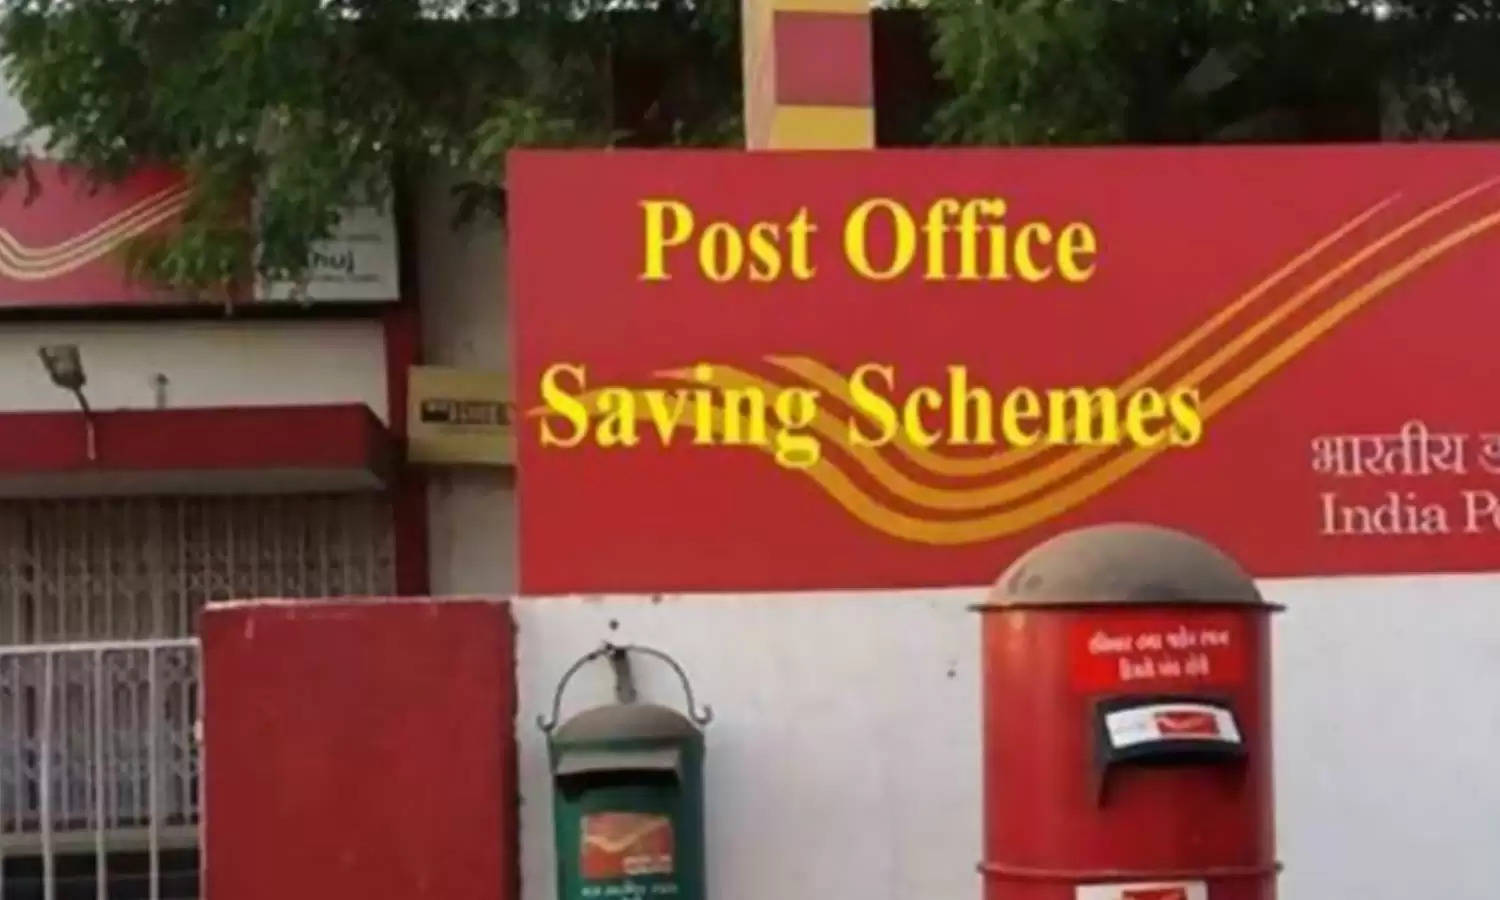 Post Office : पोस्ट ऑफिस की 8 योजनाएं, जो आपको चंद सालों में बनाती हैं करोड़पति, जानिए कैसे करें निवेश